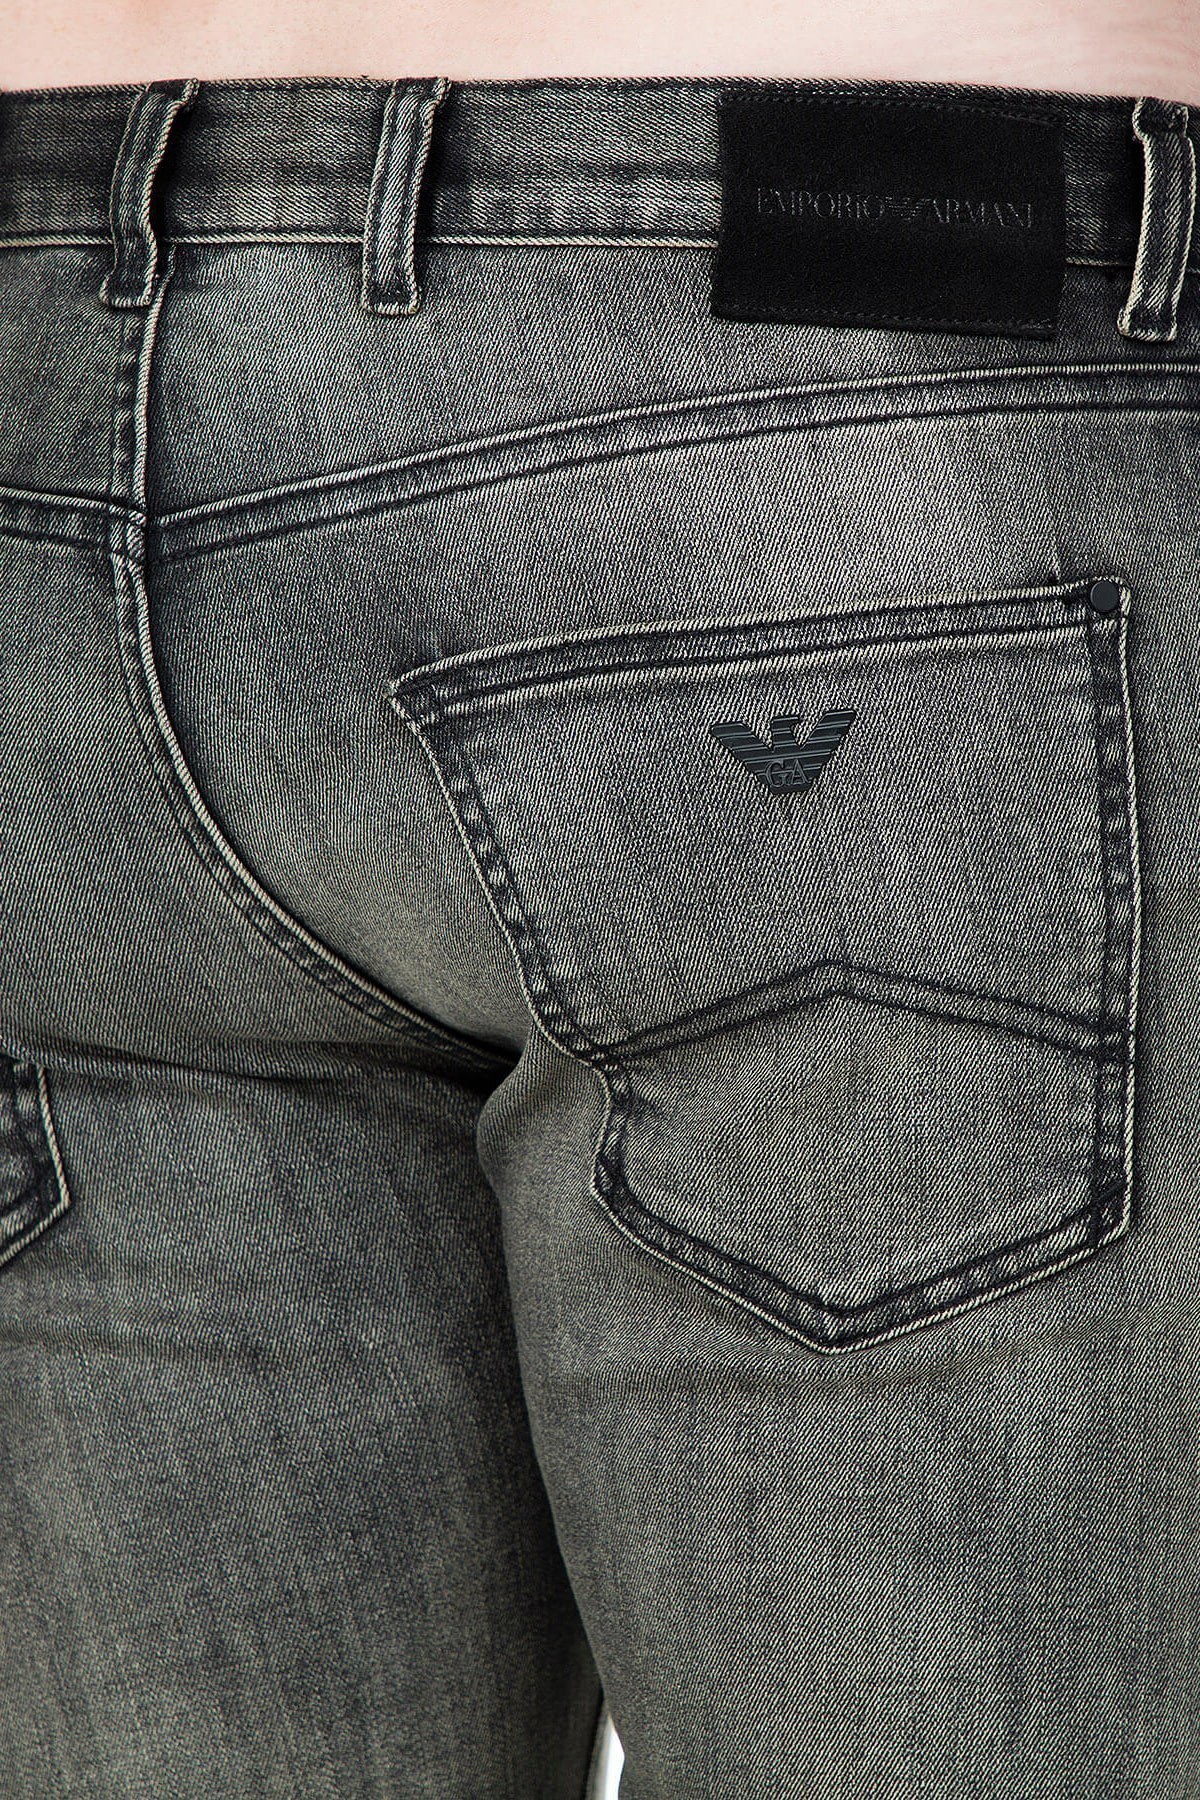 Emporio Armani J10 Jeans Erkek Kot Pantolon 6G1J10 1D6MZ 0581 YEŞİL